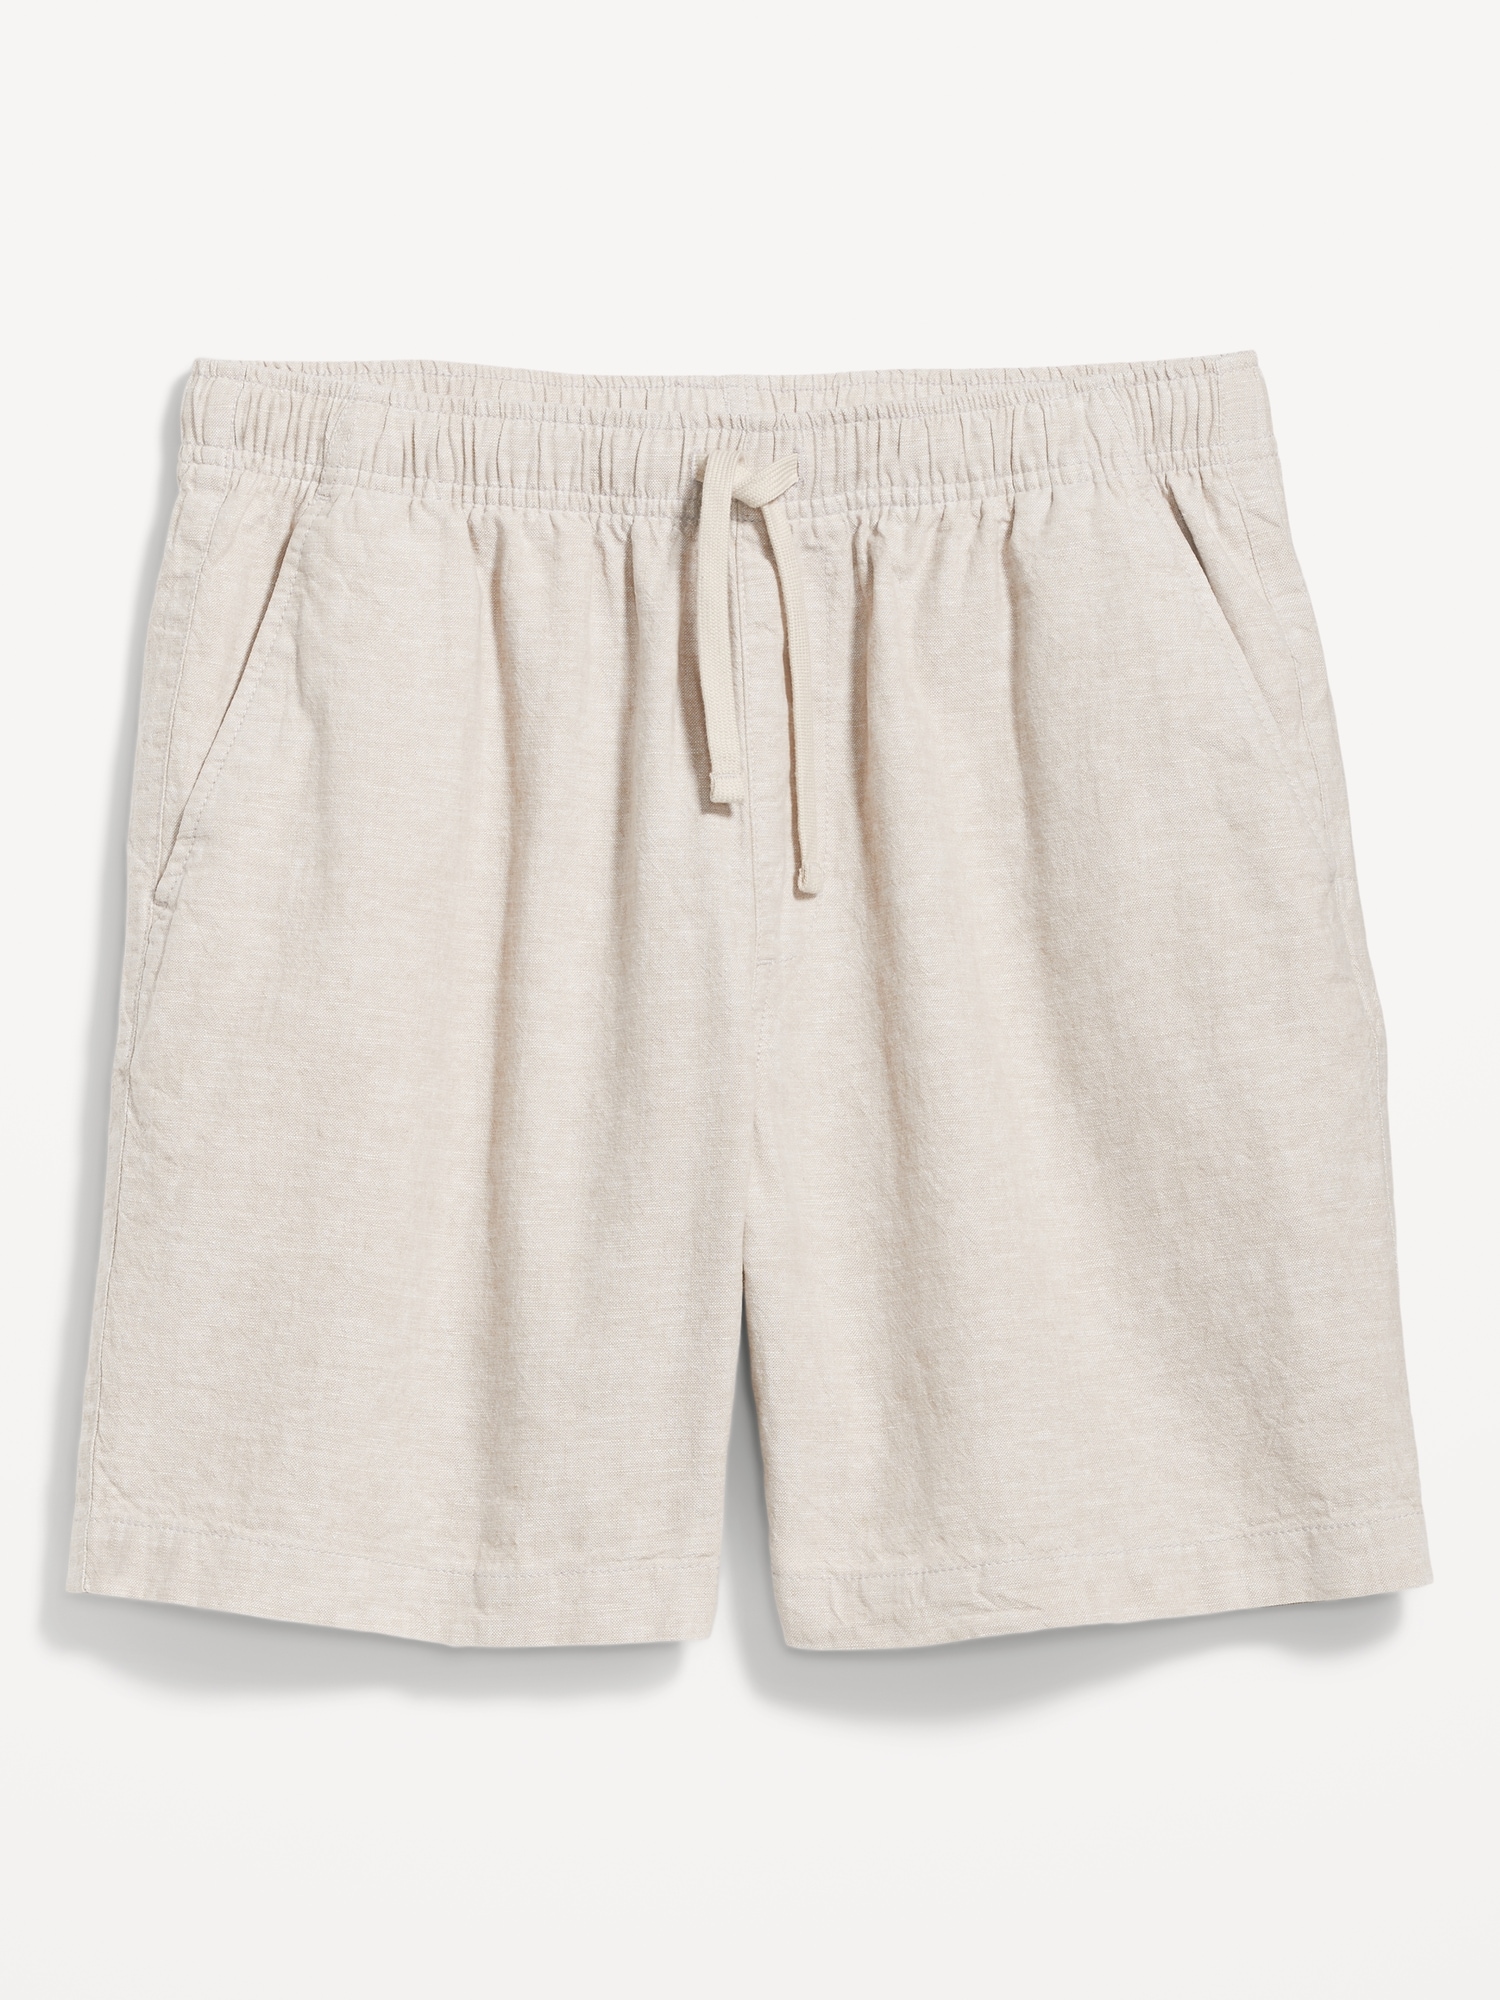 Gap Beige 7 Linen Cotton Shorts